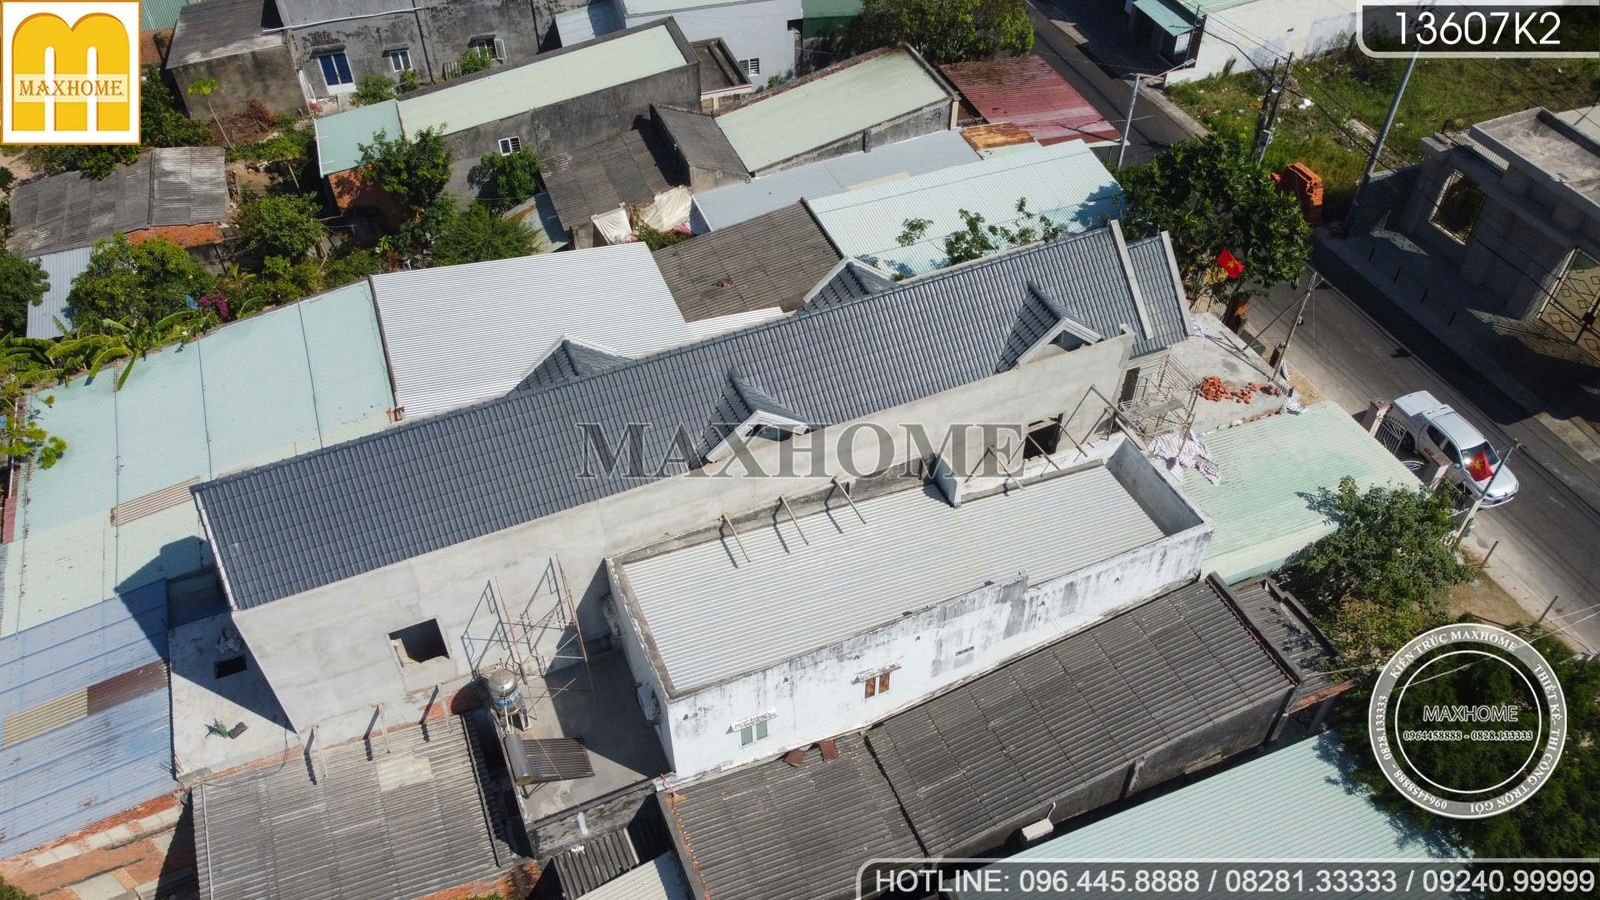 Ghé thăm tiến độ công trình nhà phố mái Thái tại Vũng Tàu I MH02267